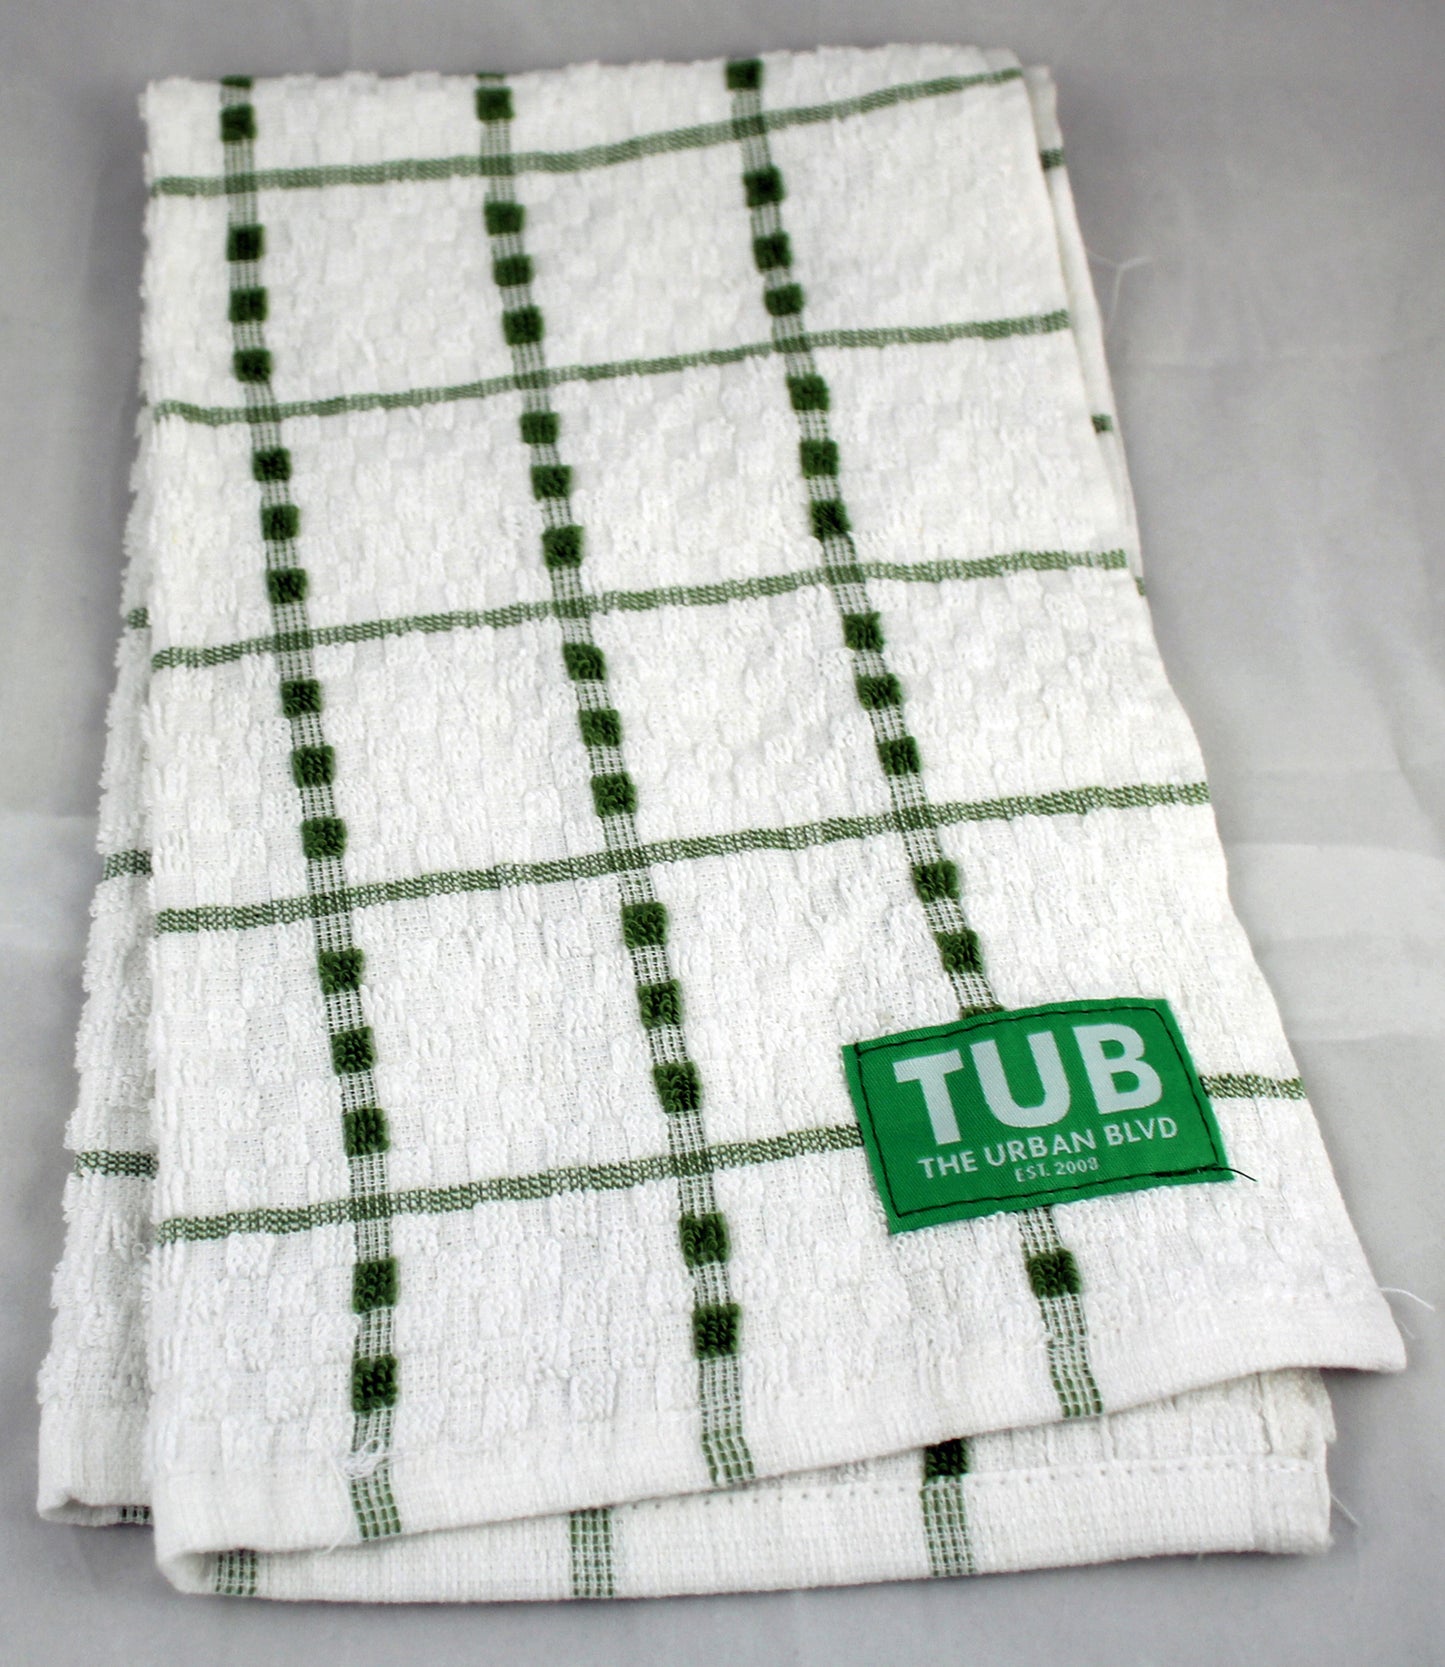 TUB Kitchen Towel (white with green stripes)